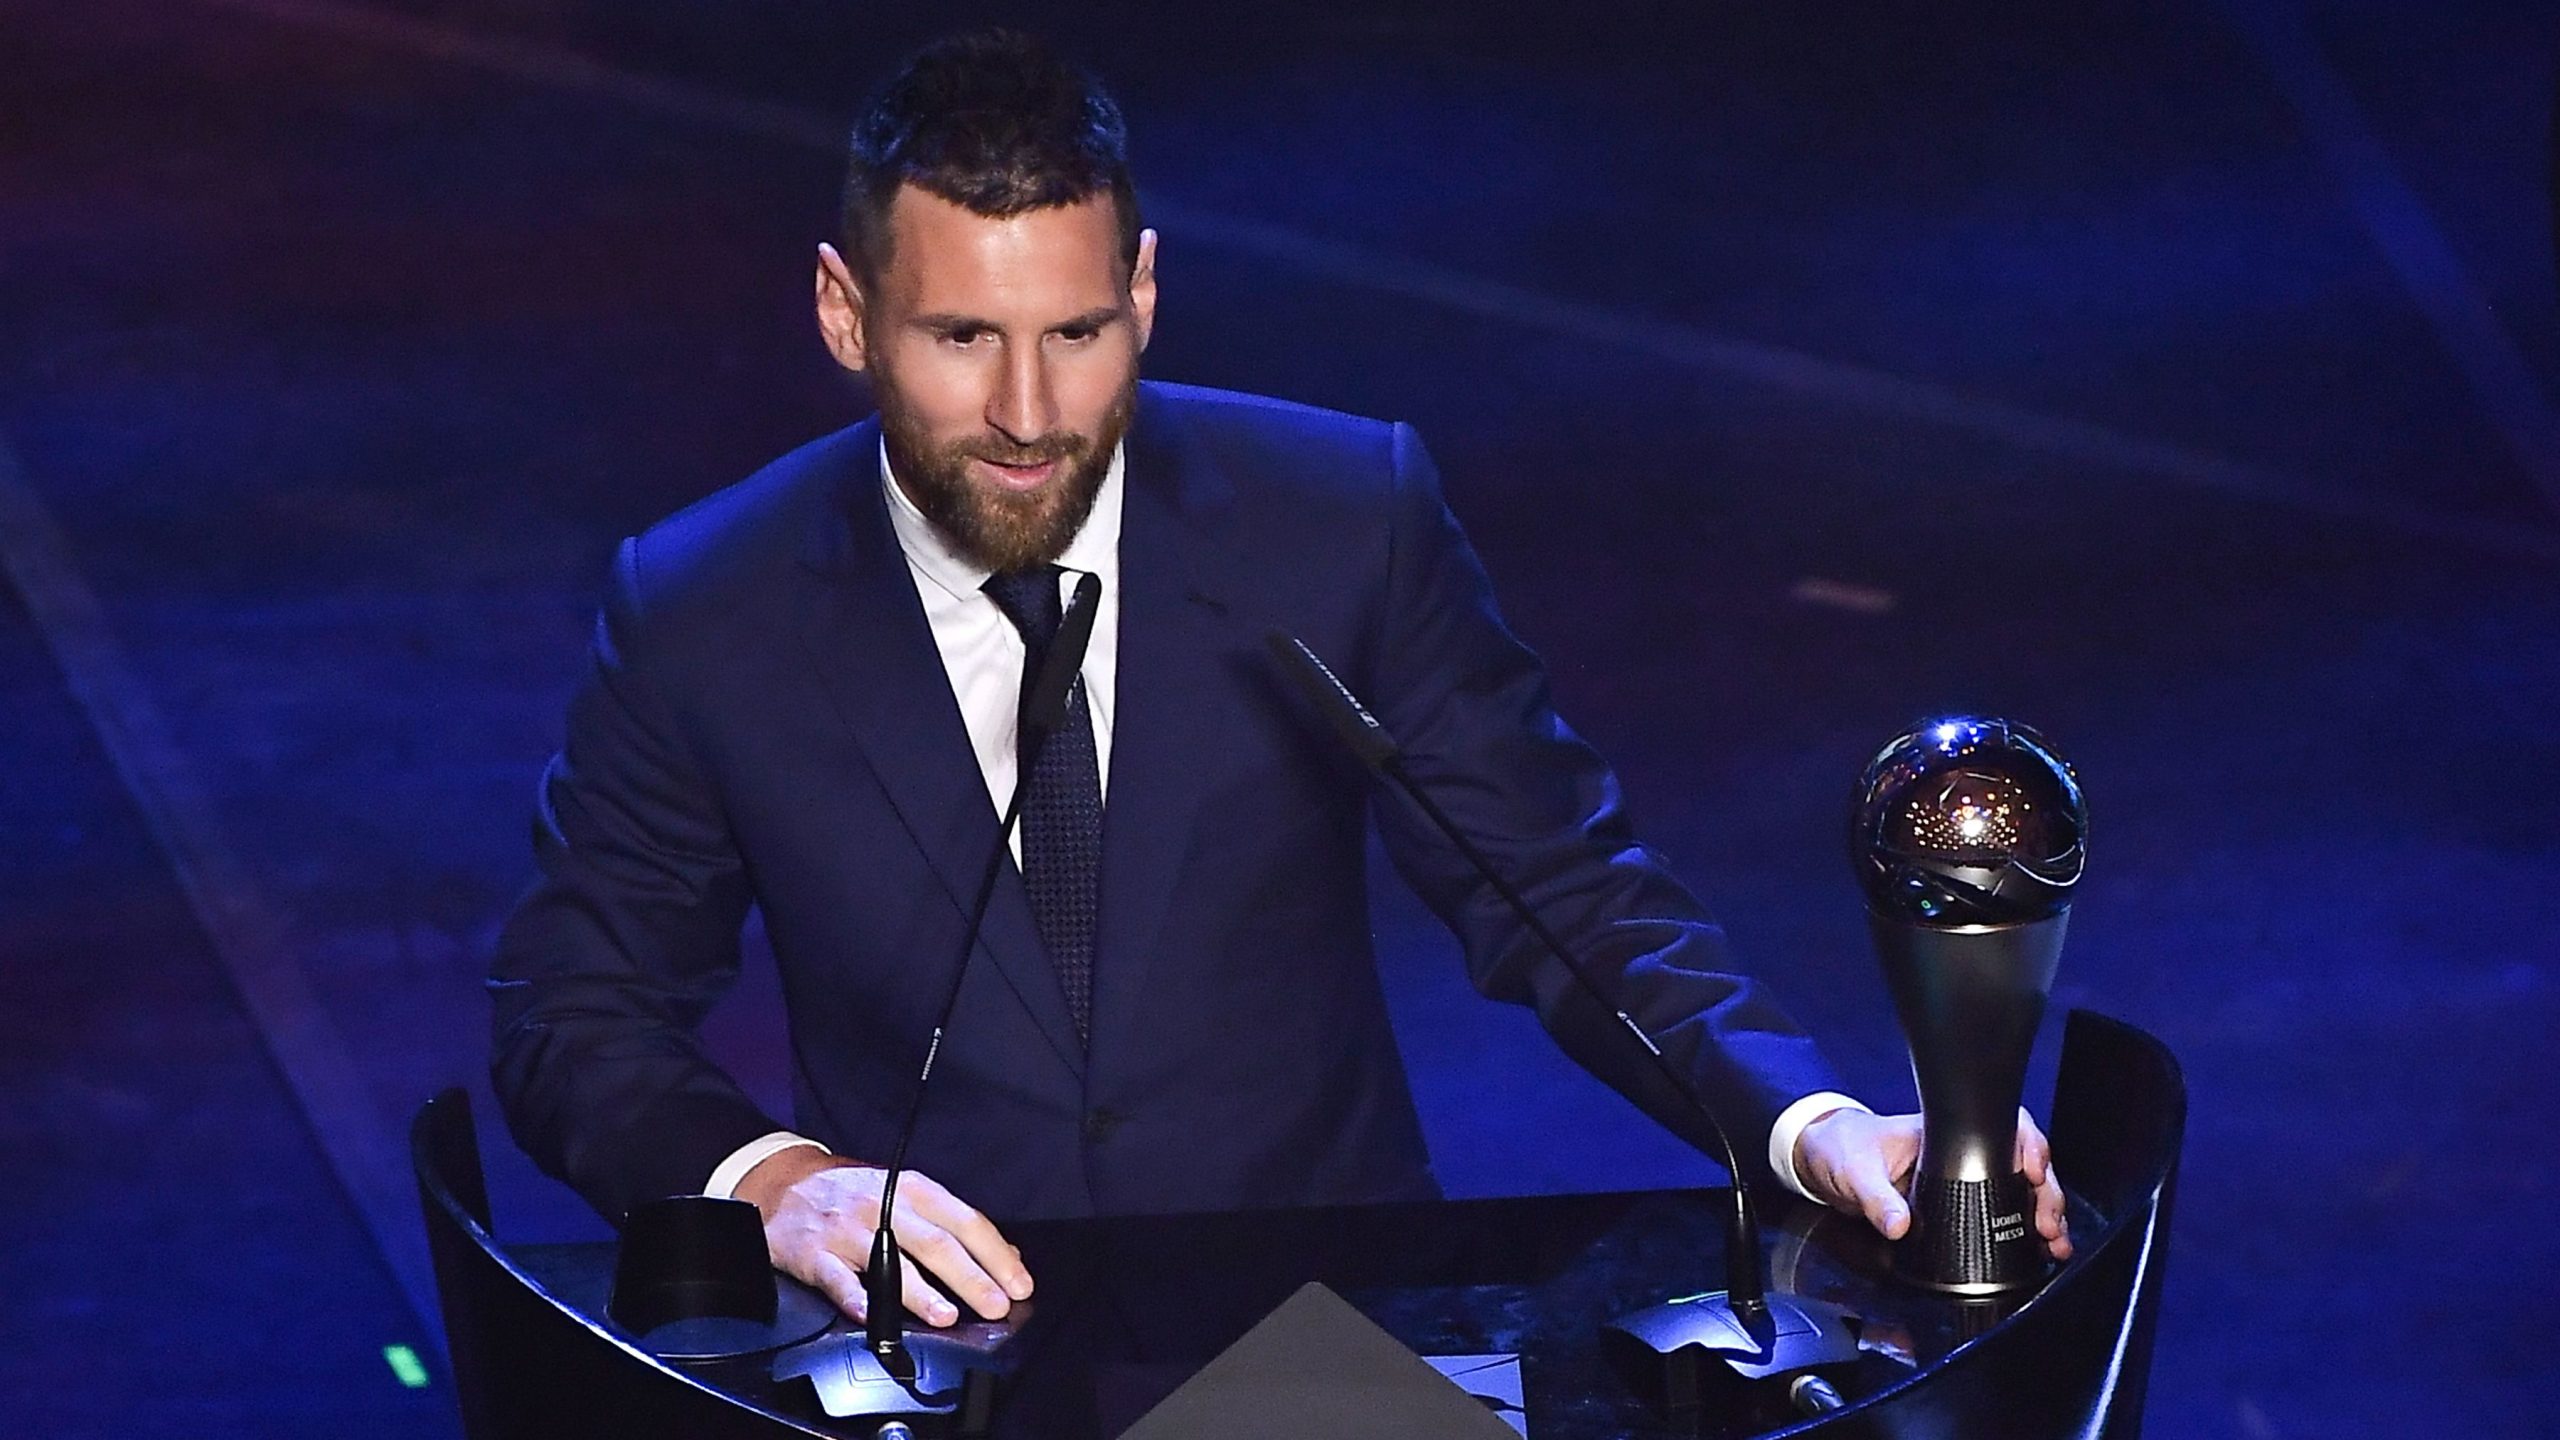 FIFA The Best Awards 2020 : La cérémonie aura bien lieu, voici tout ce qu’il faut savoir sur les votes